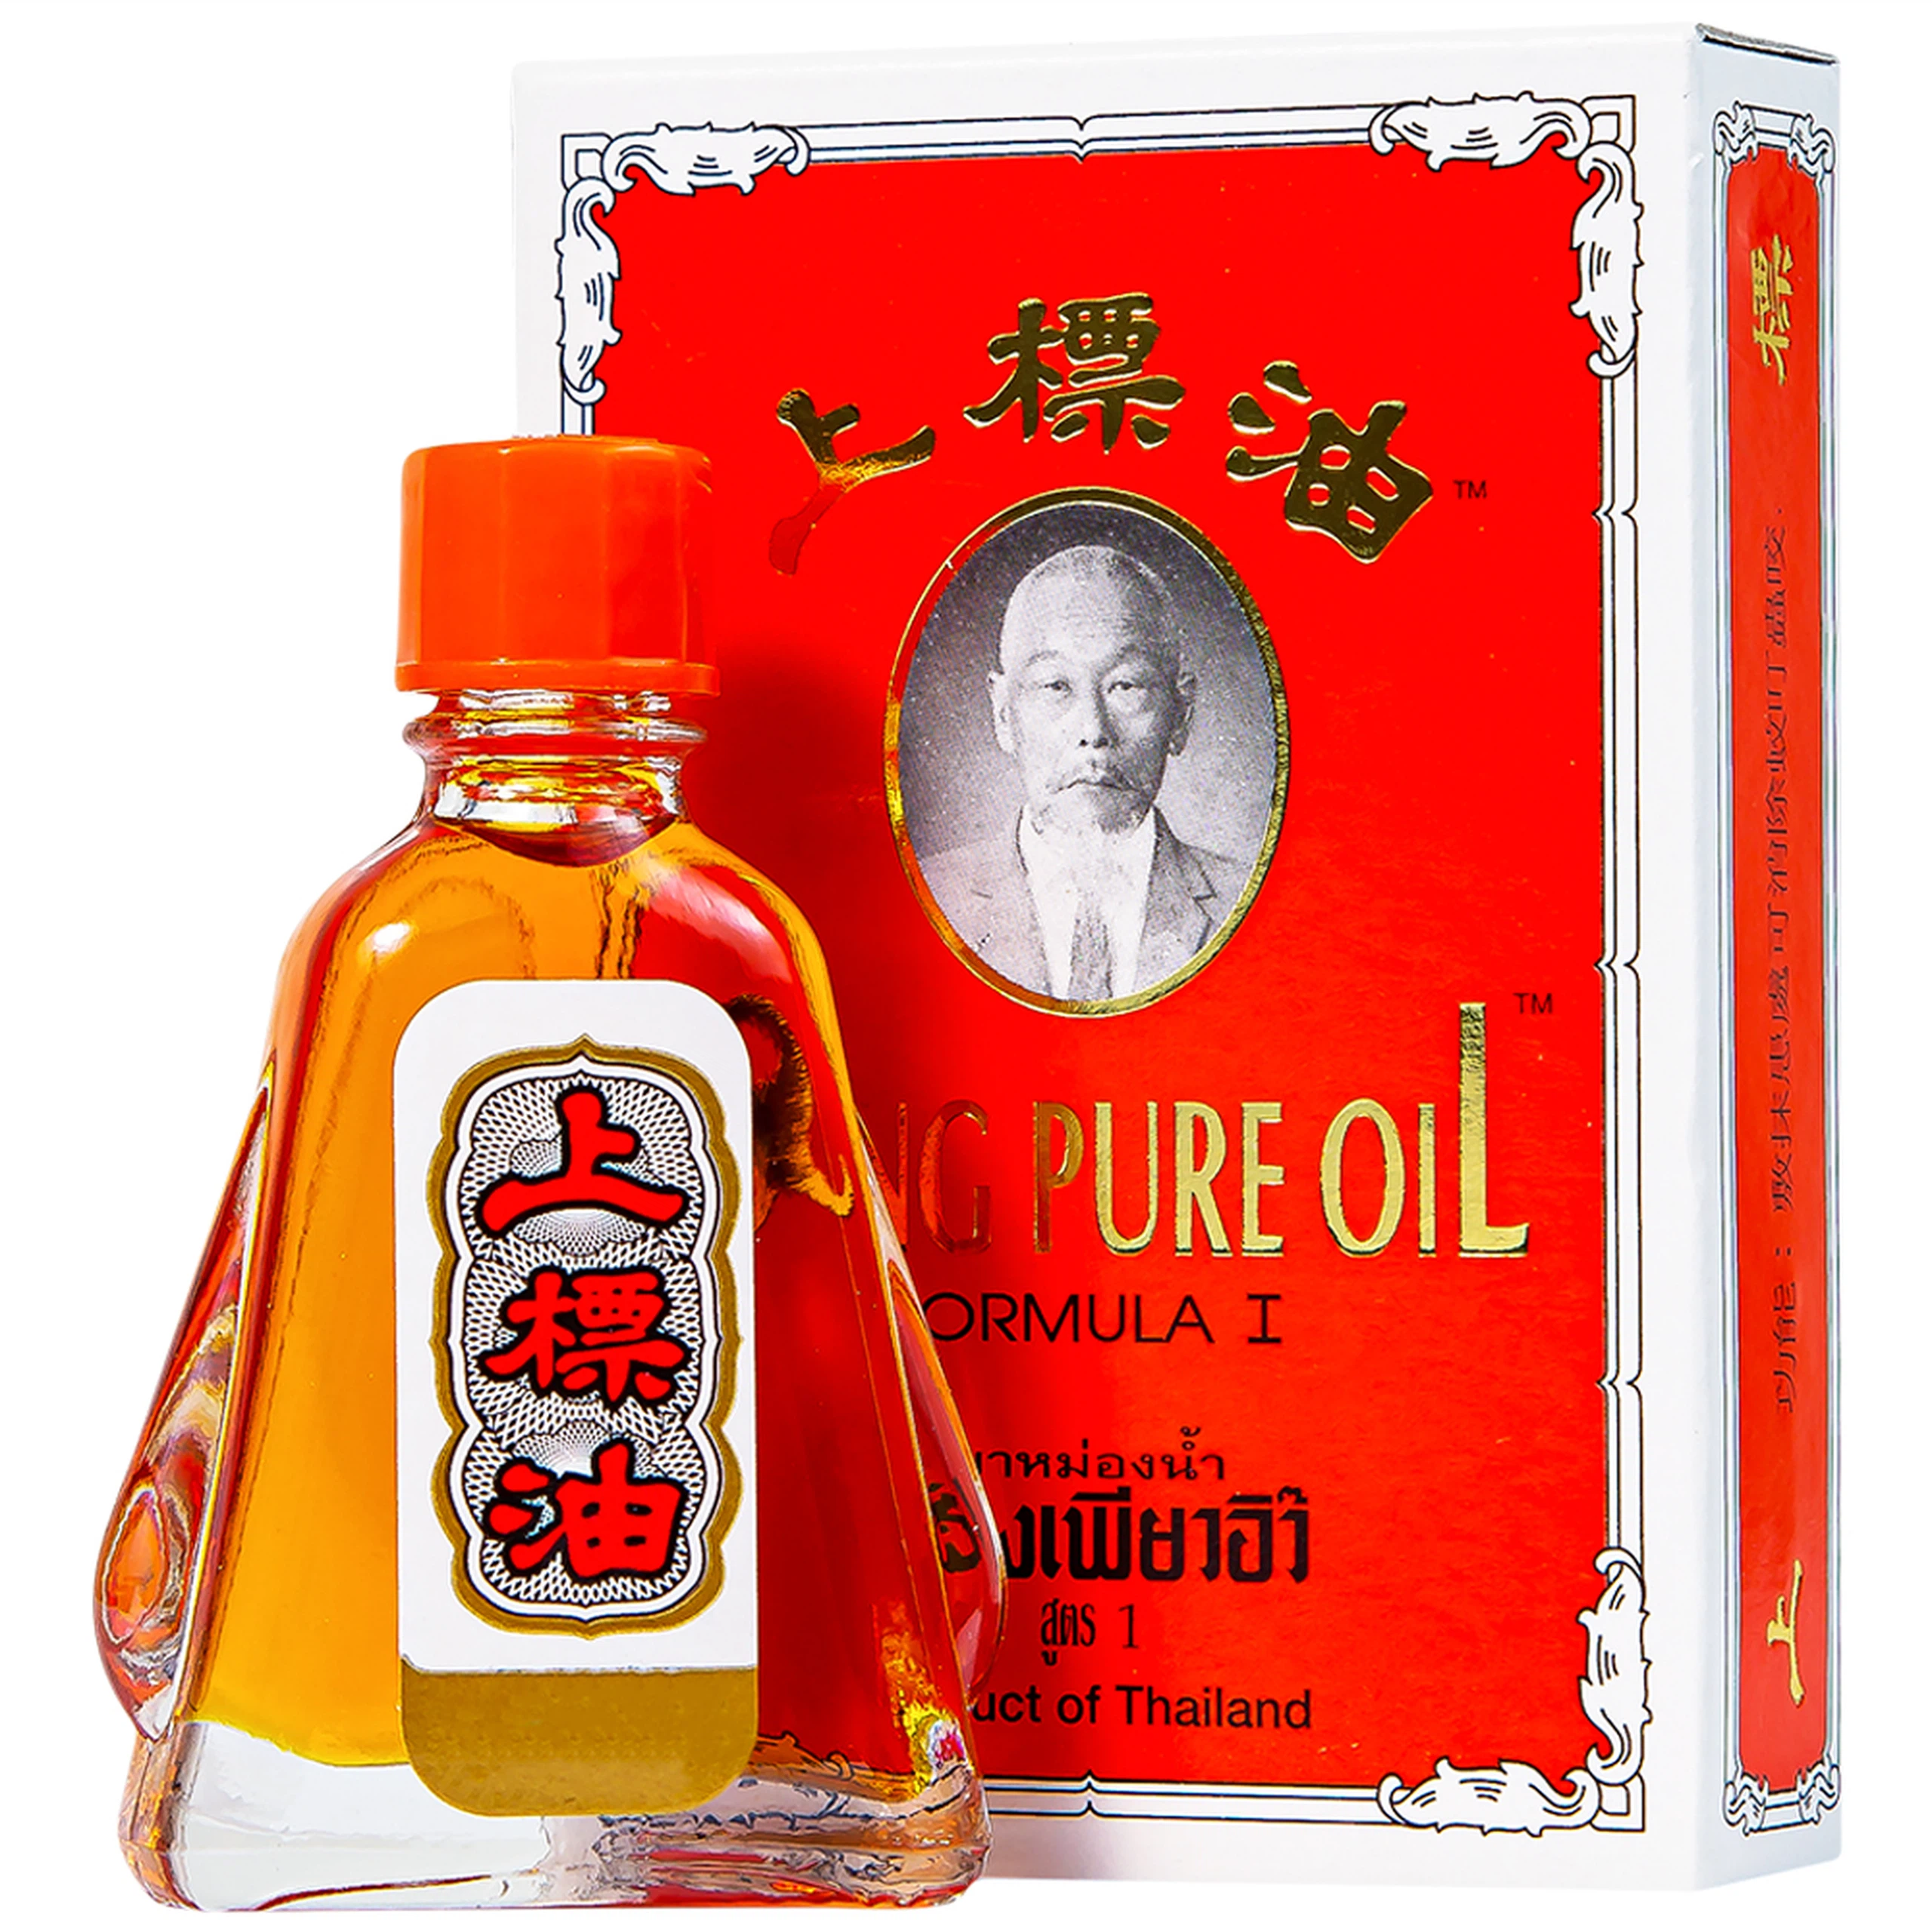 Dầu Siang Pure Oil Formula I giảm triệu chứng cảm lạnh, nhức đầu, chóng mặt, ngạt mũi (6 chai x 7ml)